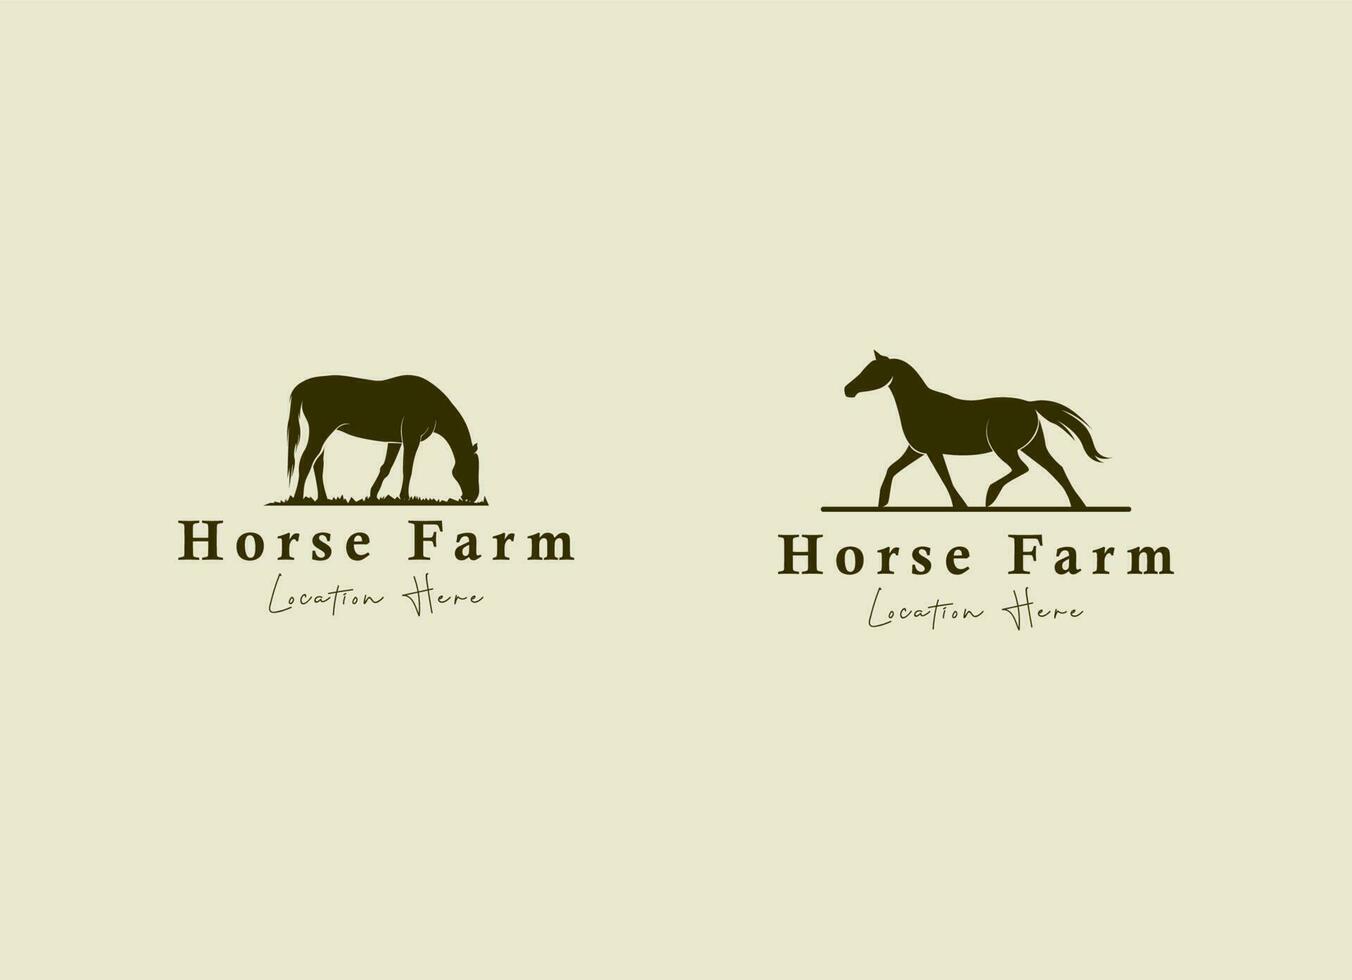 silueta de caballo detrás del paddock de la cerca de madera para el diseño del logotipo del rancho de la granja del país occidental del campo rústico retro vintage vector